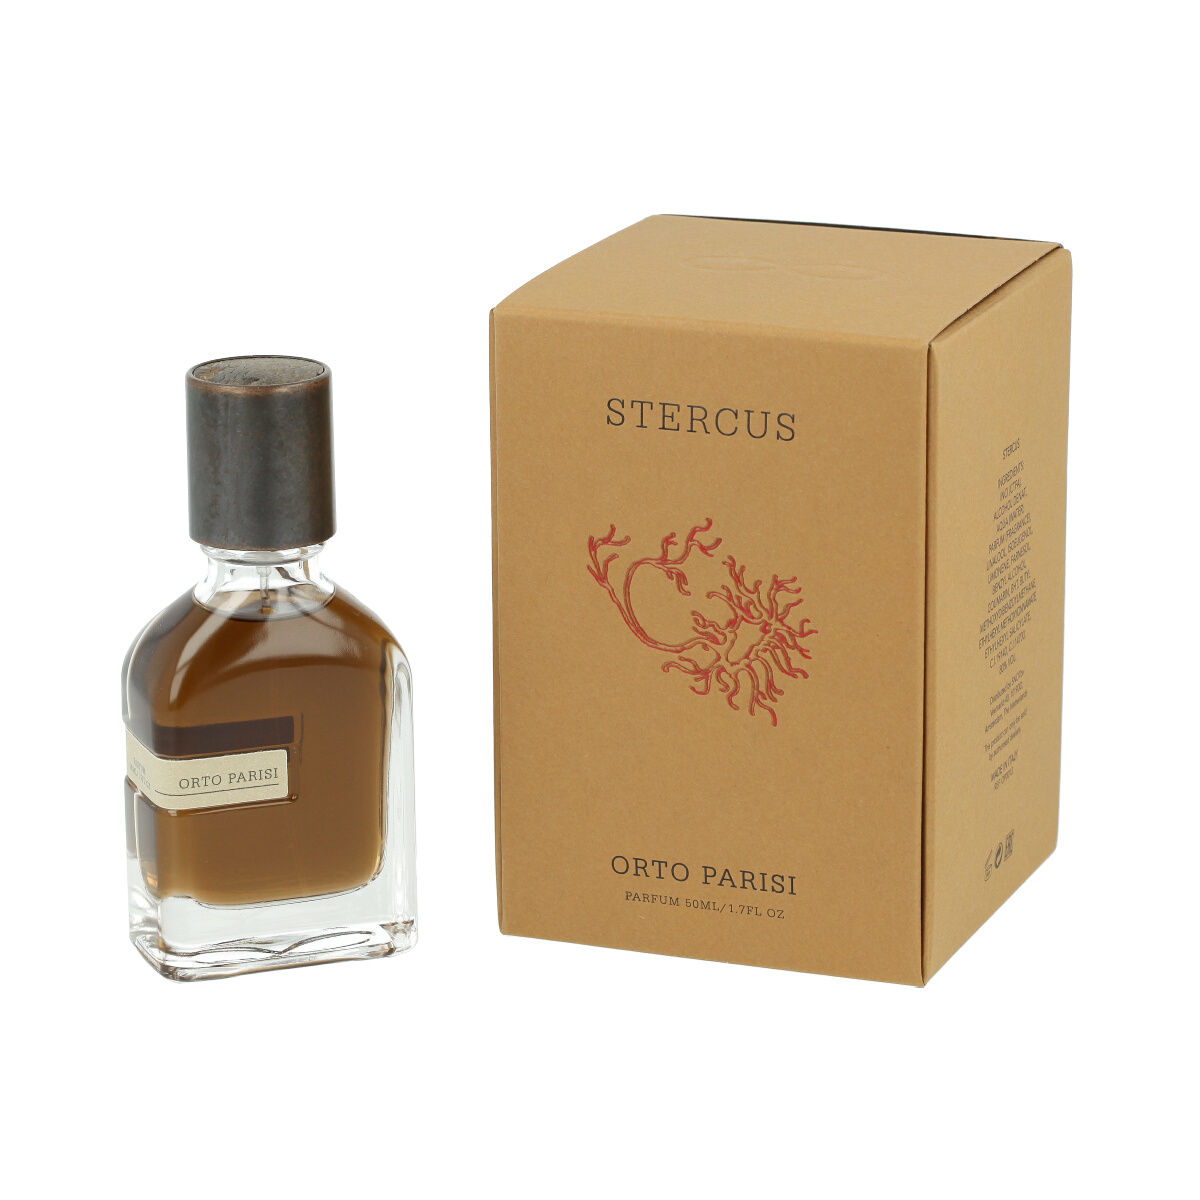 Orto Parisi Stercus 15 ml NIŠINIAI kvepalų mėginukas (atomaizeris) Unisex Parfum